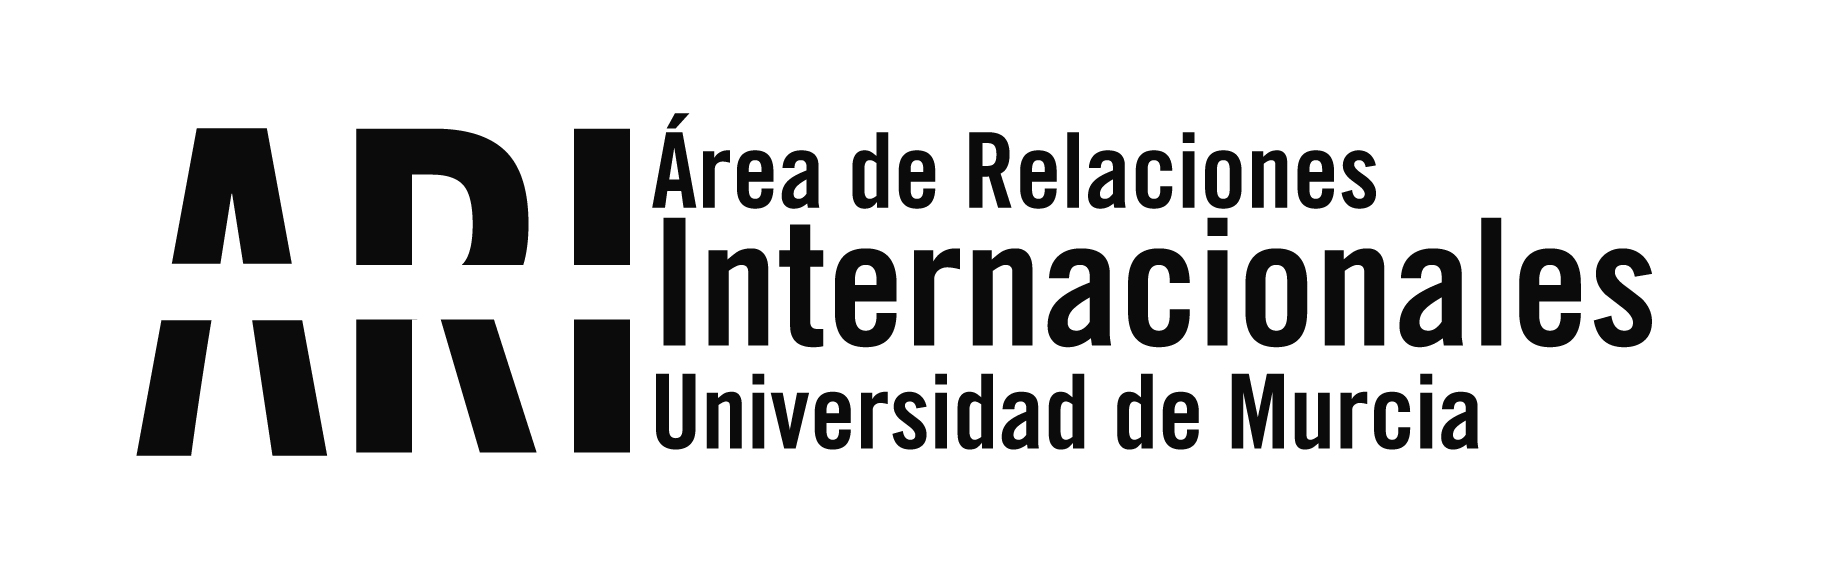 La cónsul de Colombia en Valencia visita la Universidad de Murcia - Área de Relaciones Internacionales